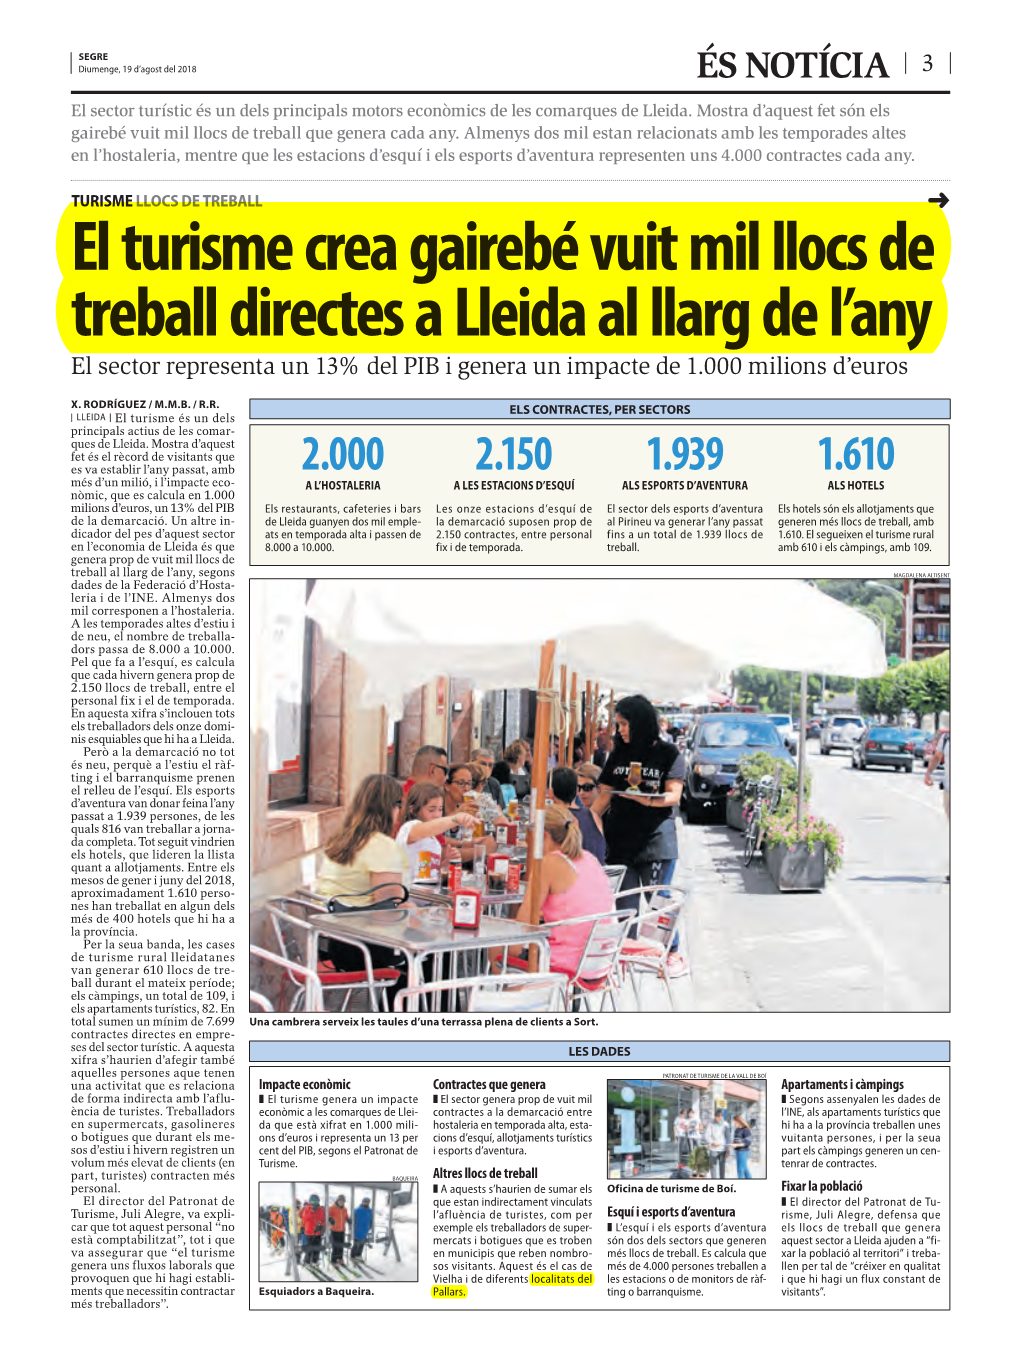 El Turisme Crea Gairebé Vuit Mil Llocs De Treball Directes a Lleida Al Llarg De L’Any El Sector Representa Un 13% Del PIB I Genera Un Impacte De 1.000 Milions D’Euros